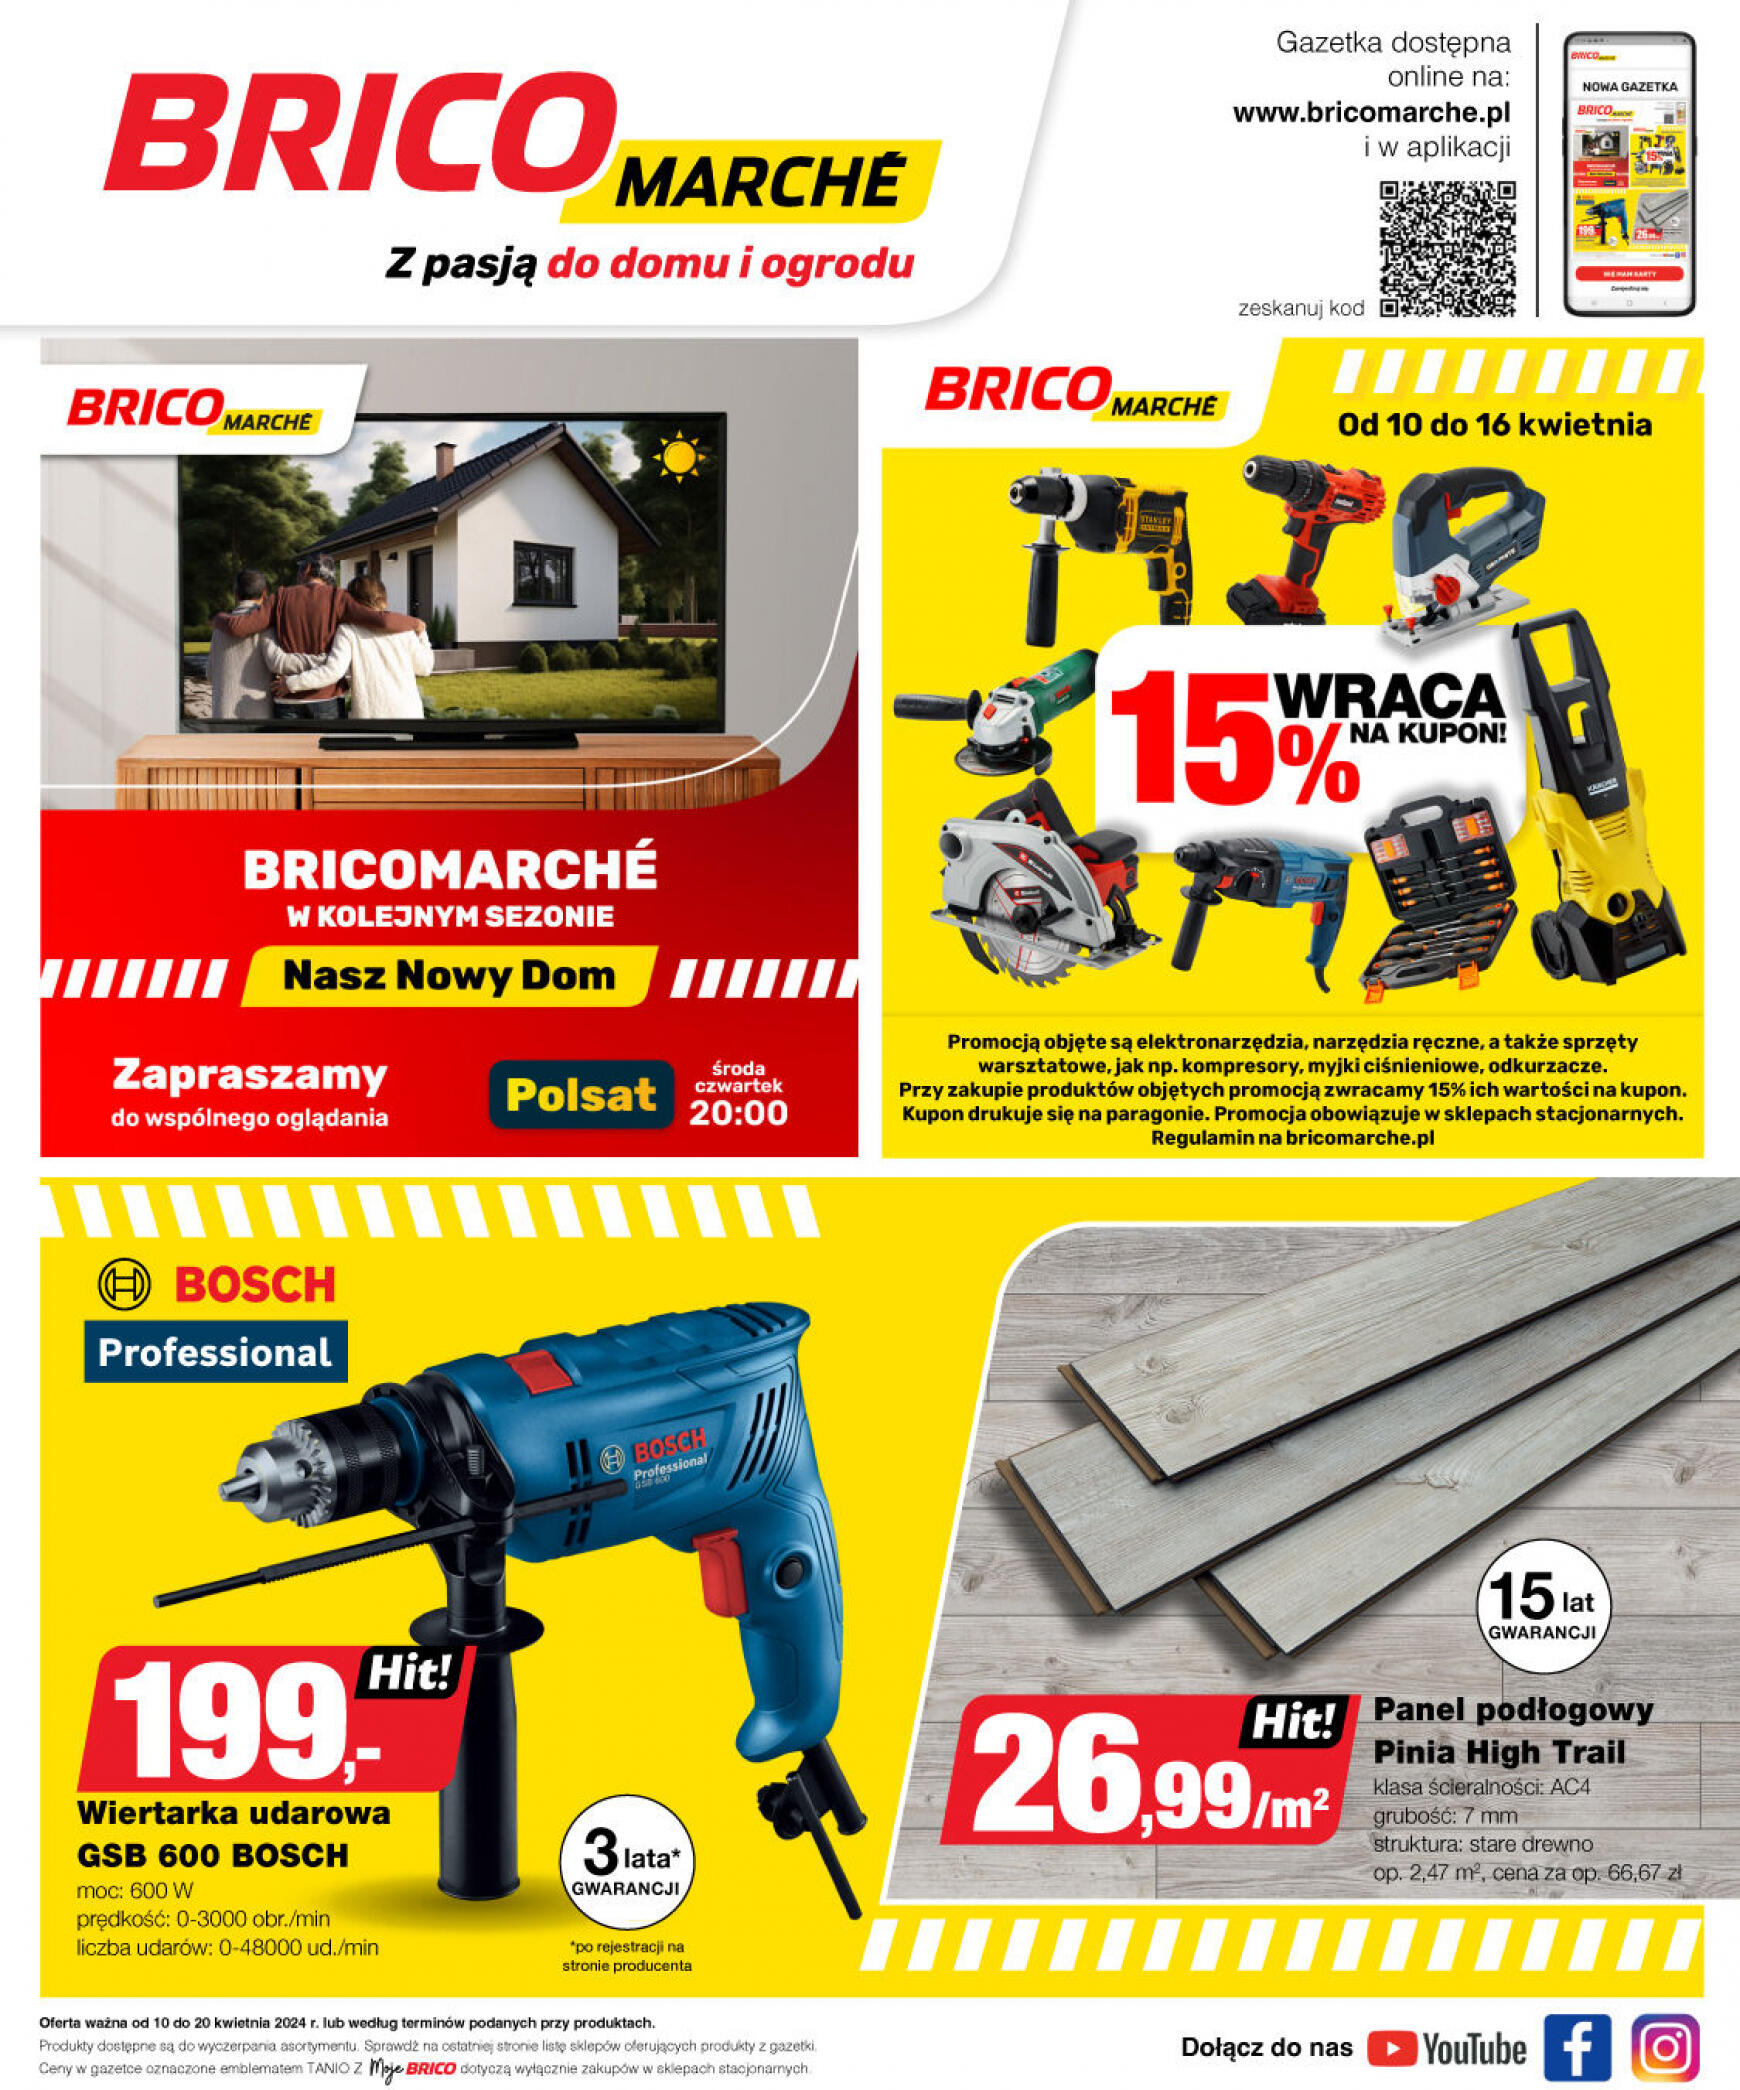 brico-marche - Bricomarché gazetka aktualna ważna od 10.04. - 20.04. - page: 12